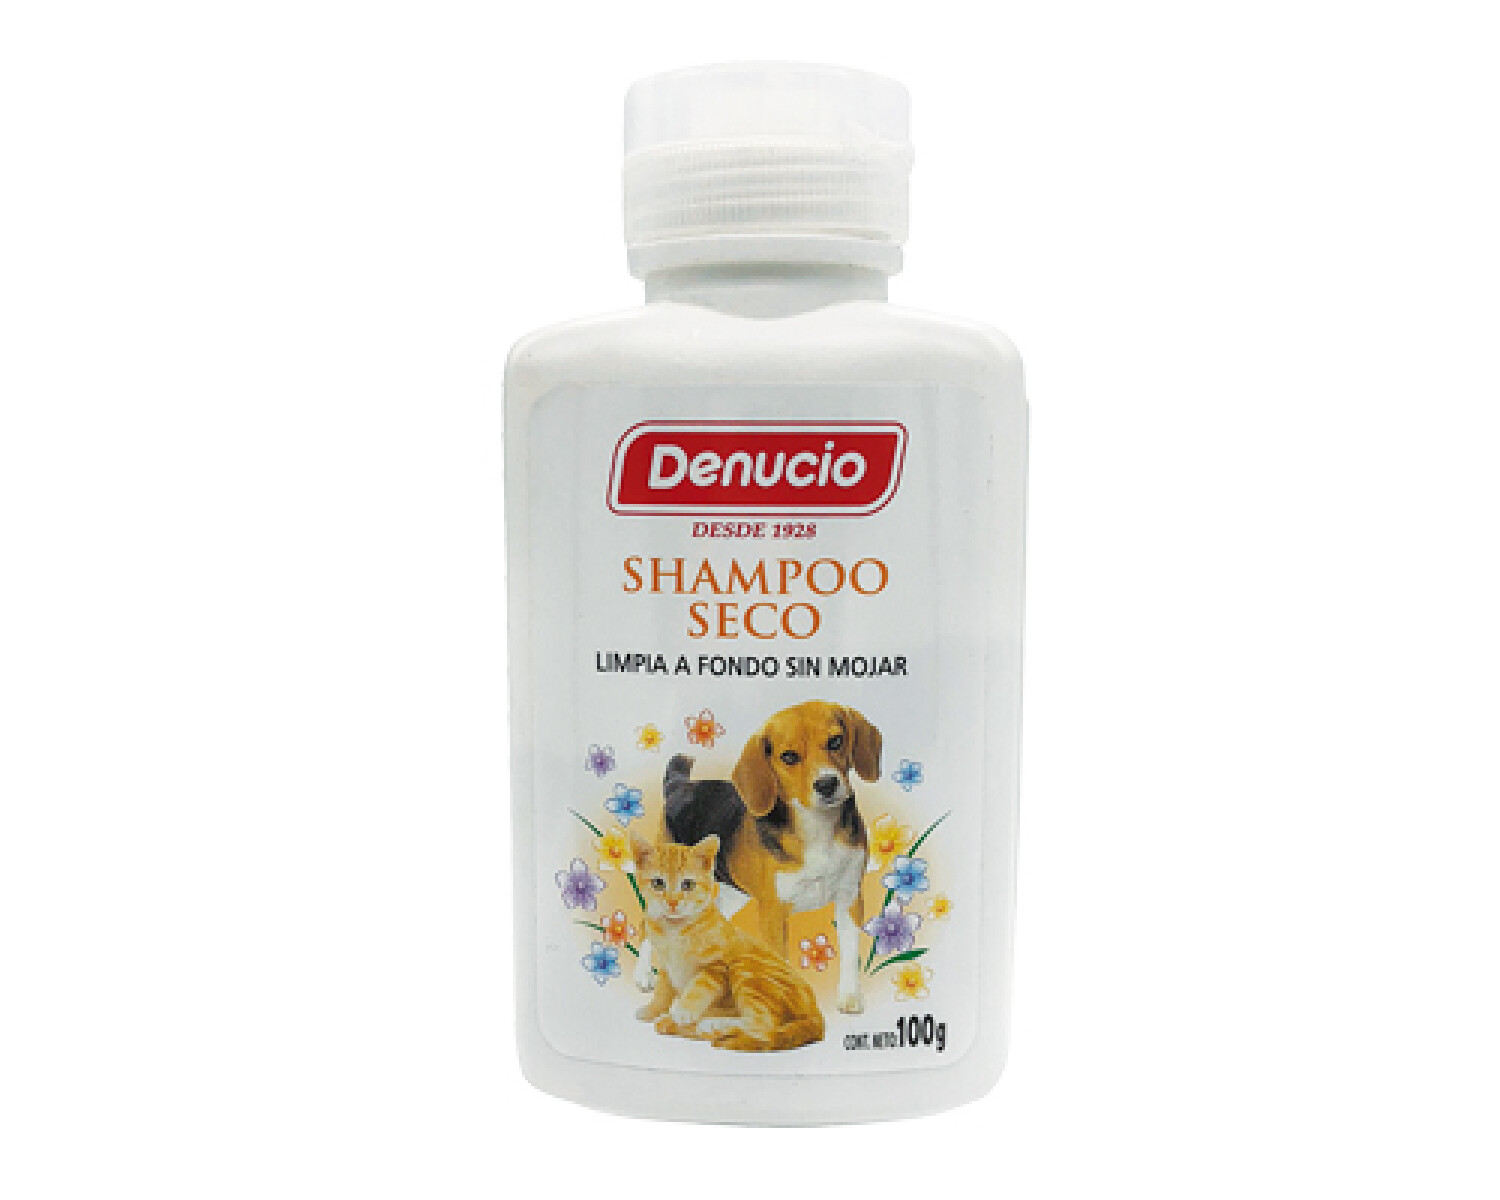 DENUCIO Shampoo Seco 100gr 